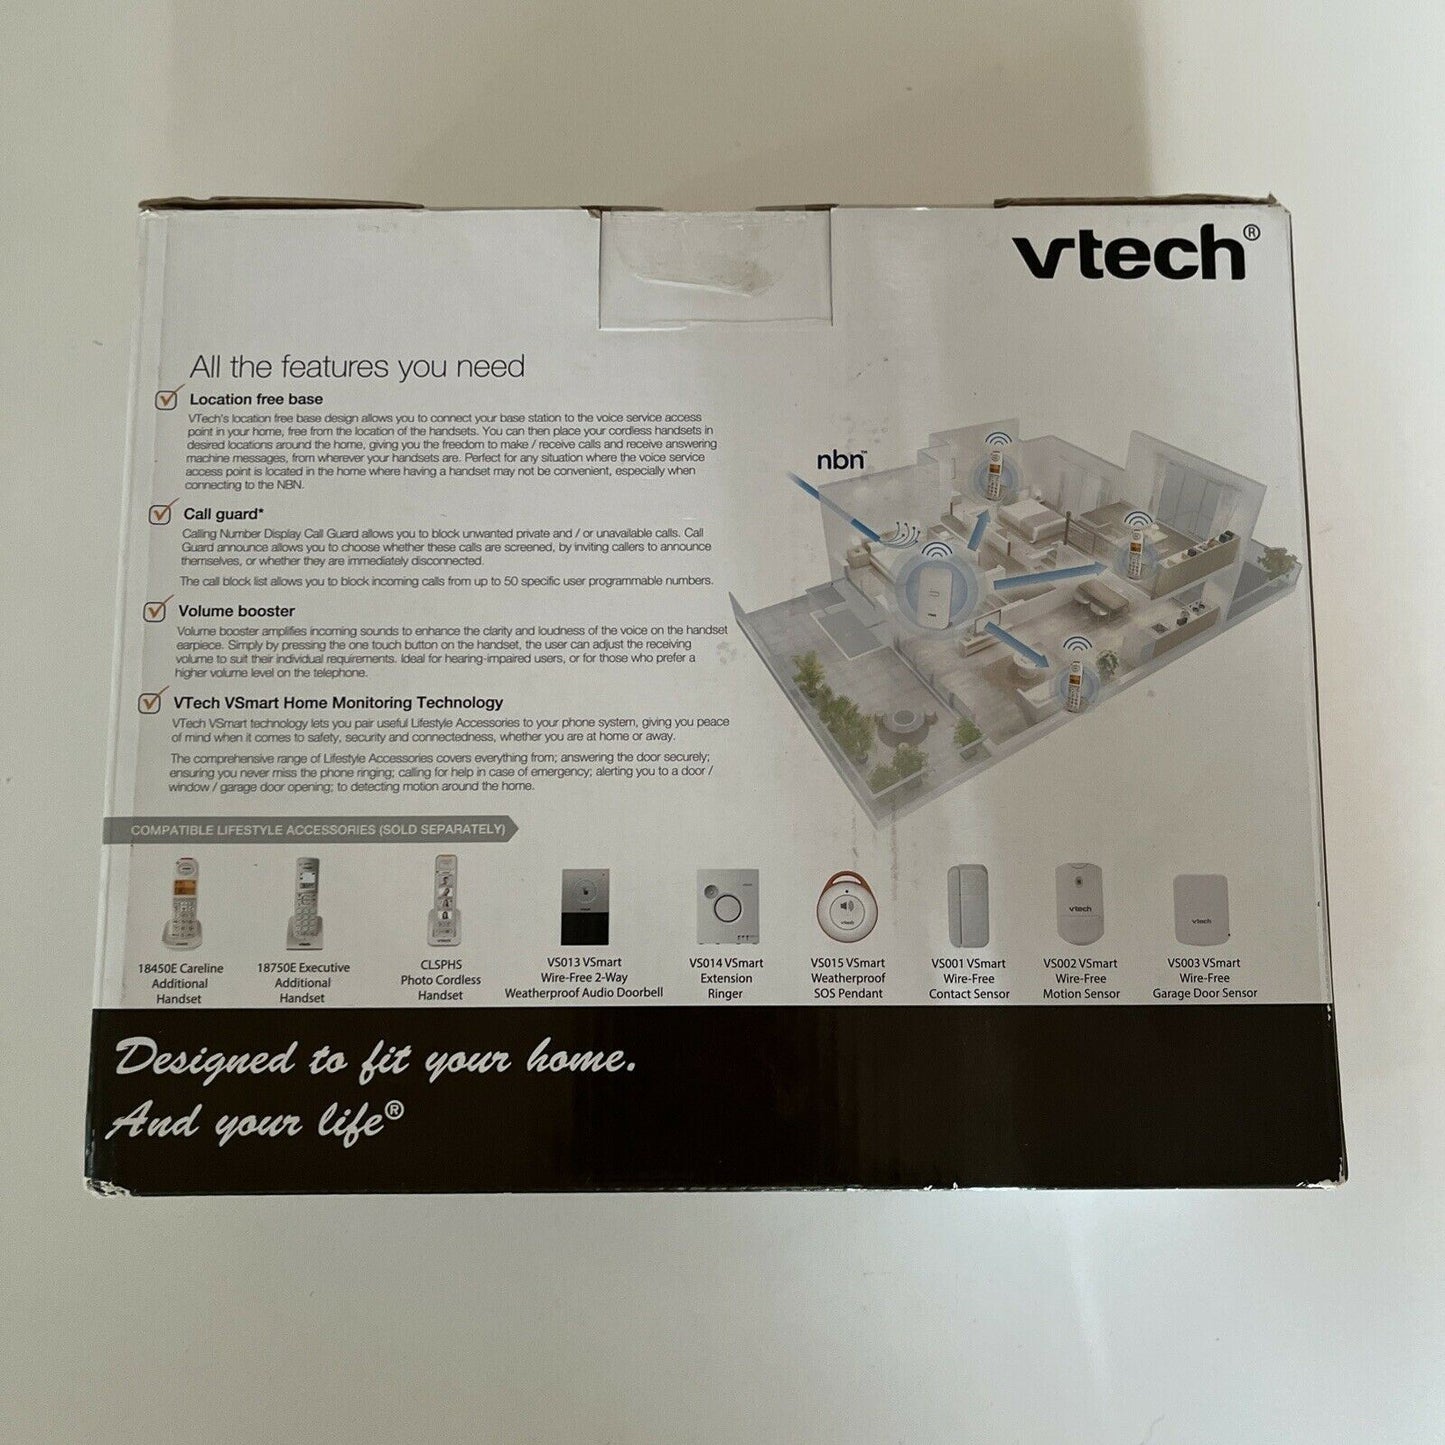 Vtech 2 Handset Careline DECT6.0 Cordless Phone with VSMART